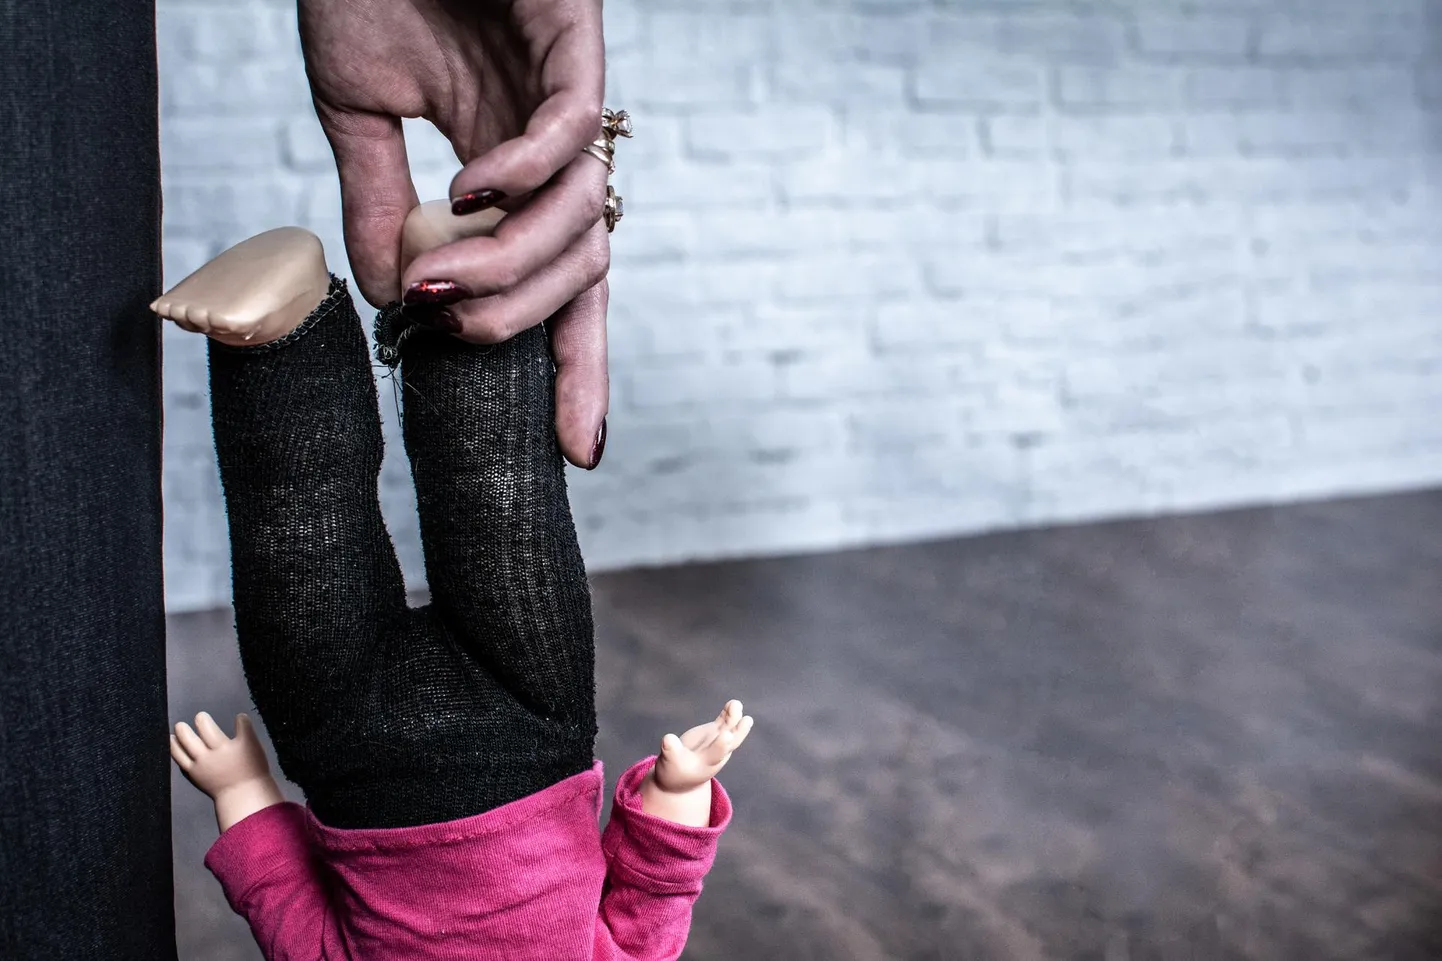 36 процентов взрослых считают физическое наказание детей не насилием, а методом воспитания.